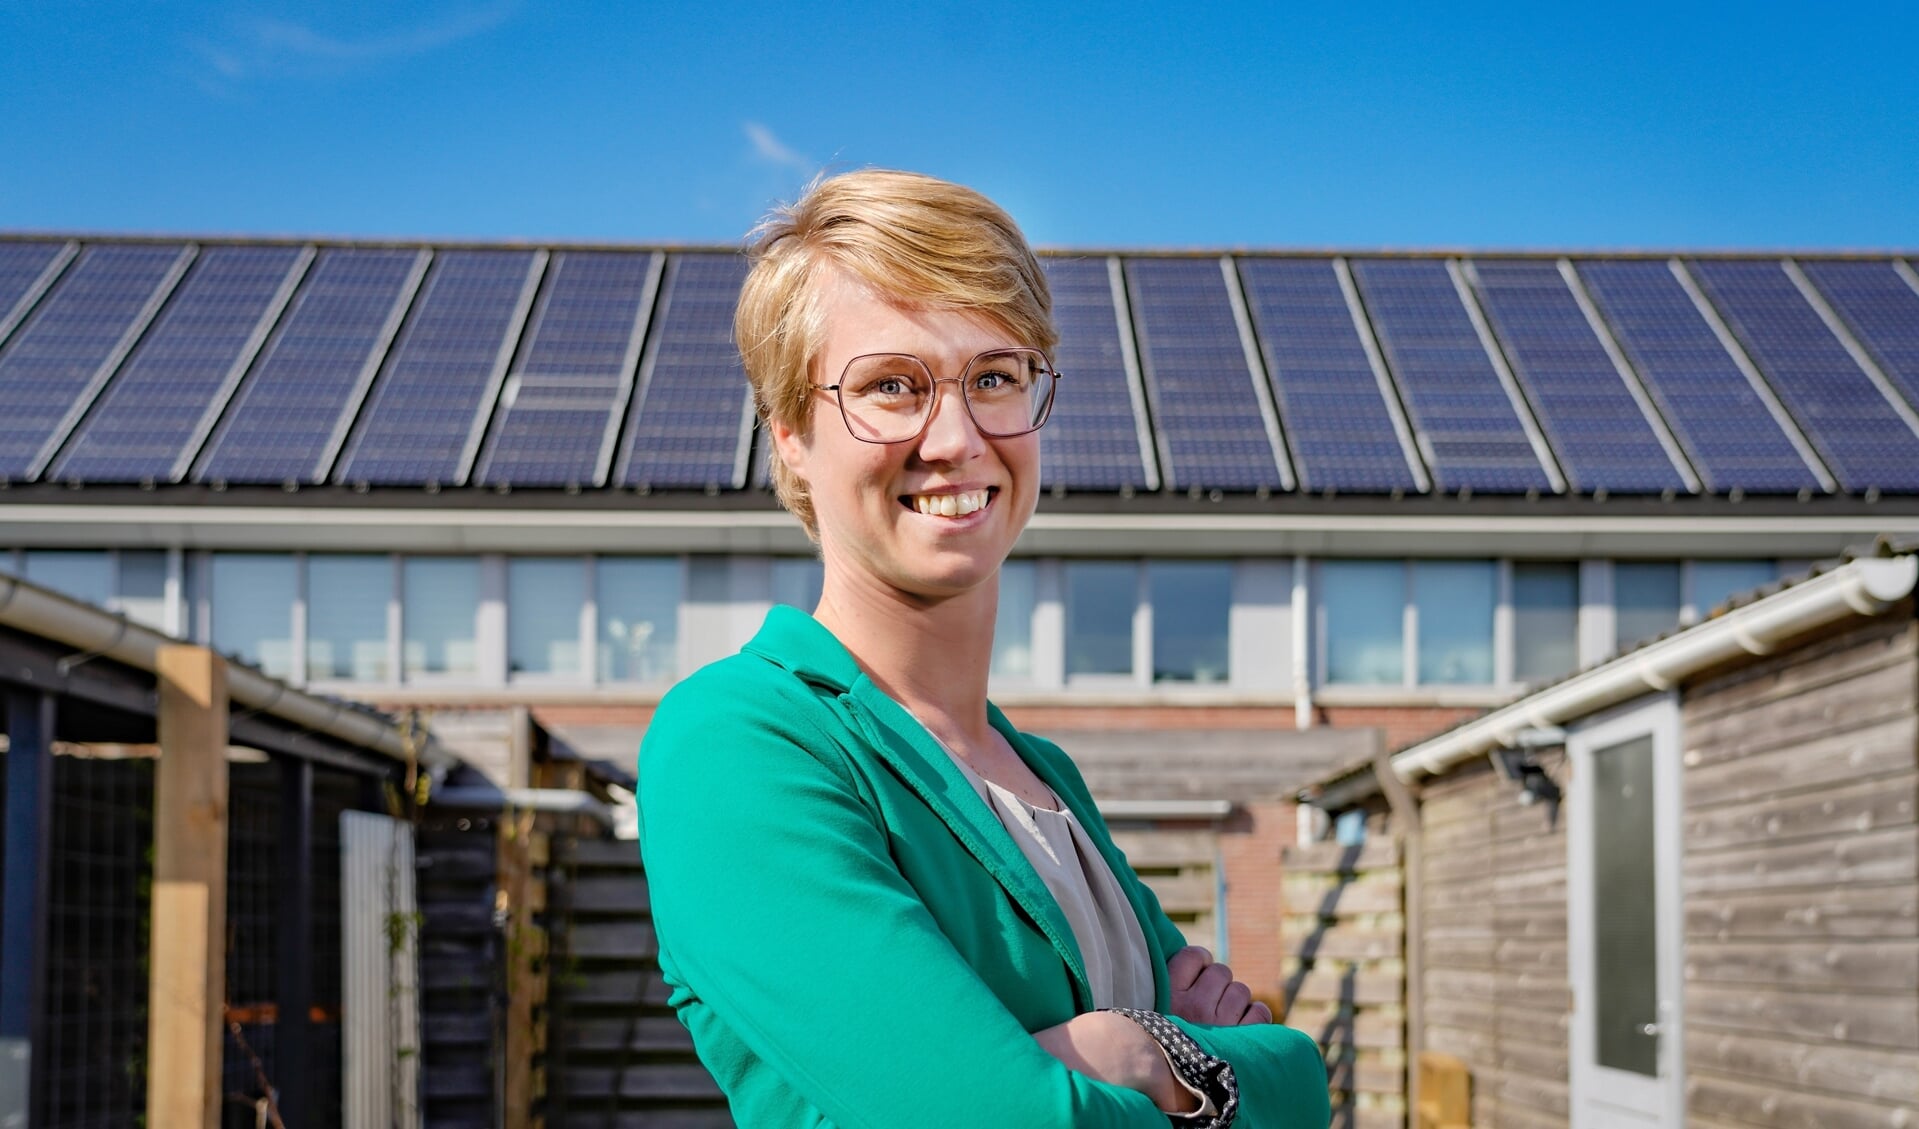 Klimaatburgemeester Petra van Kleef vertelt meer over zero waste.